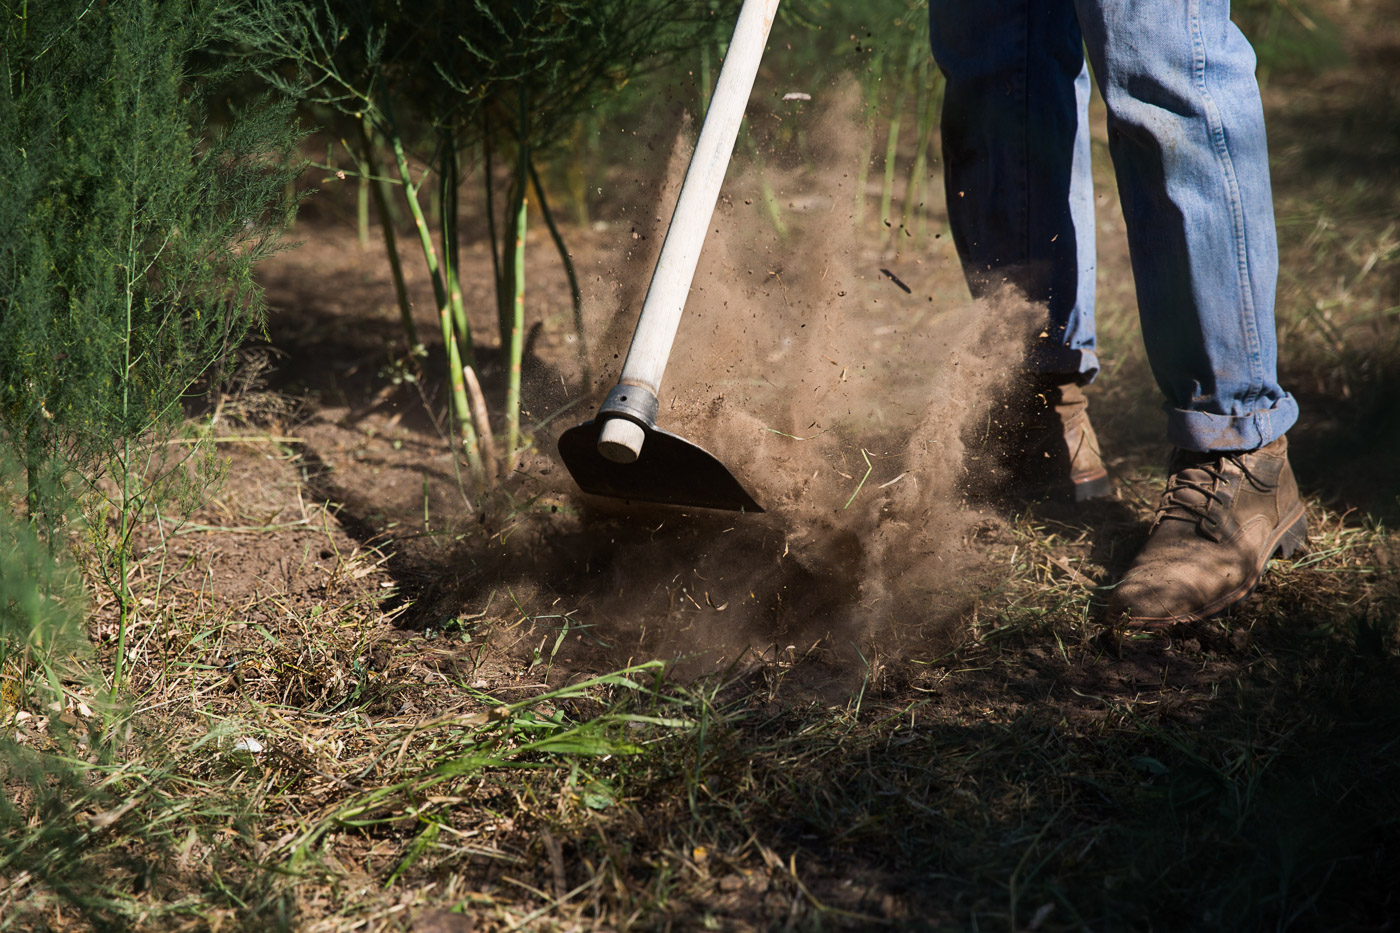 agriculture photographer - a farmer prepares an asparagus field at Hell